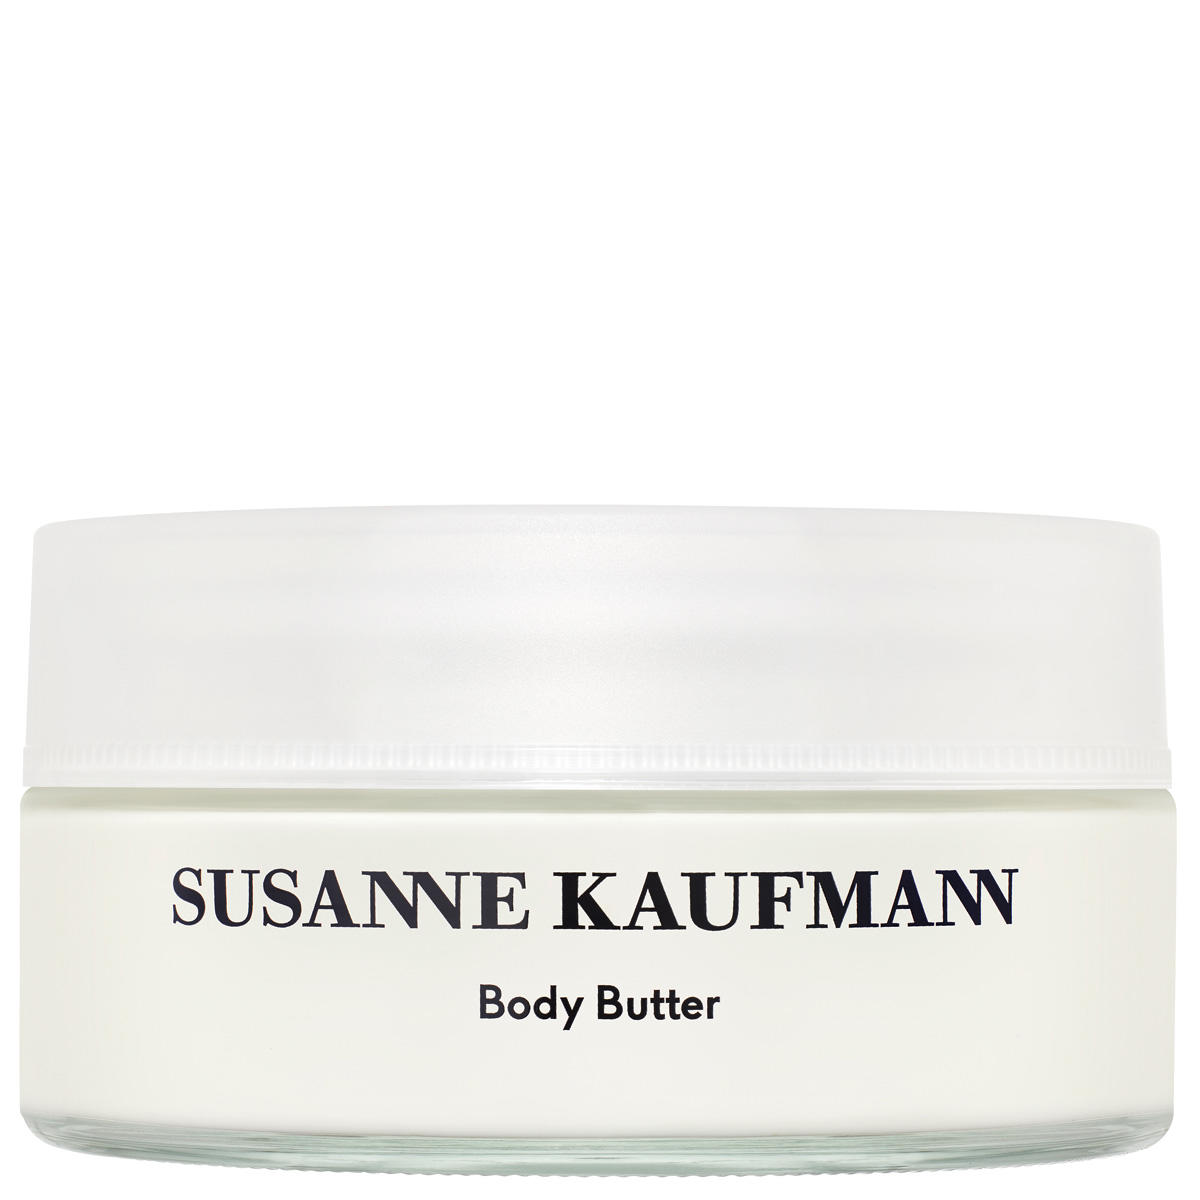 Susanne Kaufmann Körperbutter - Body Butter 200 ml - 1